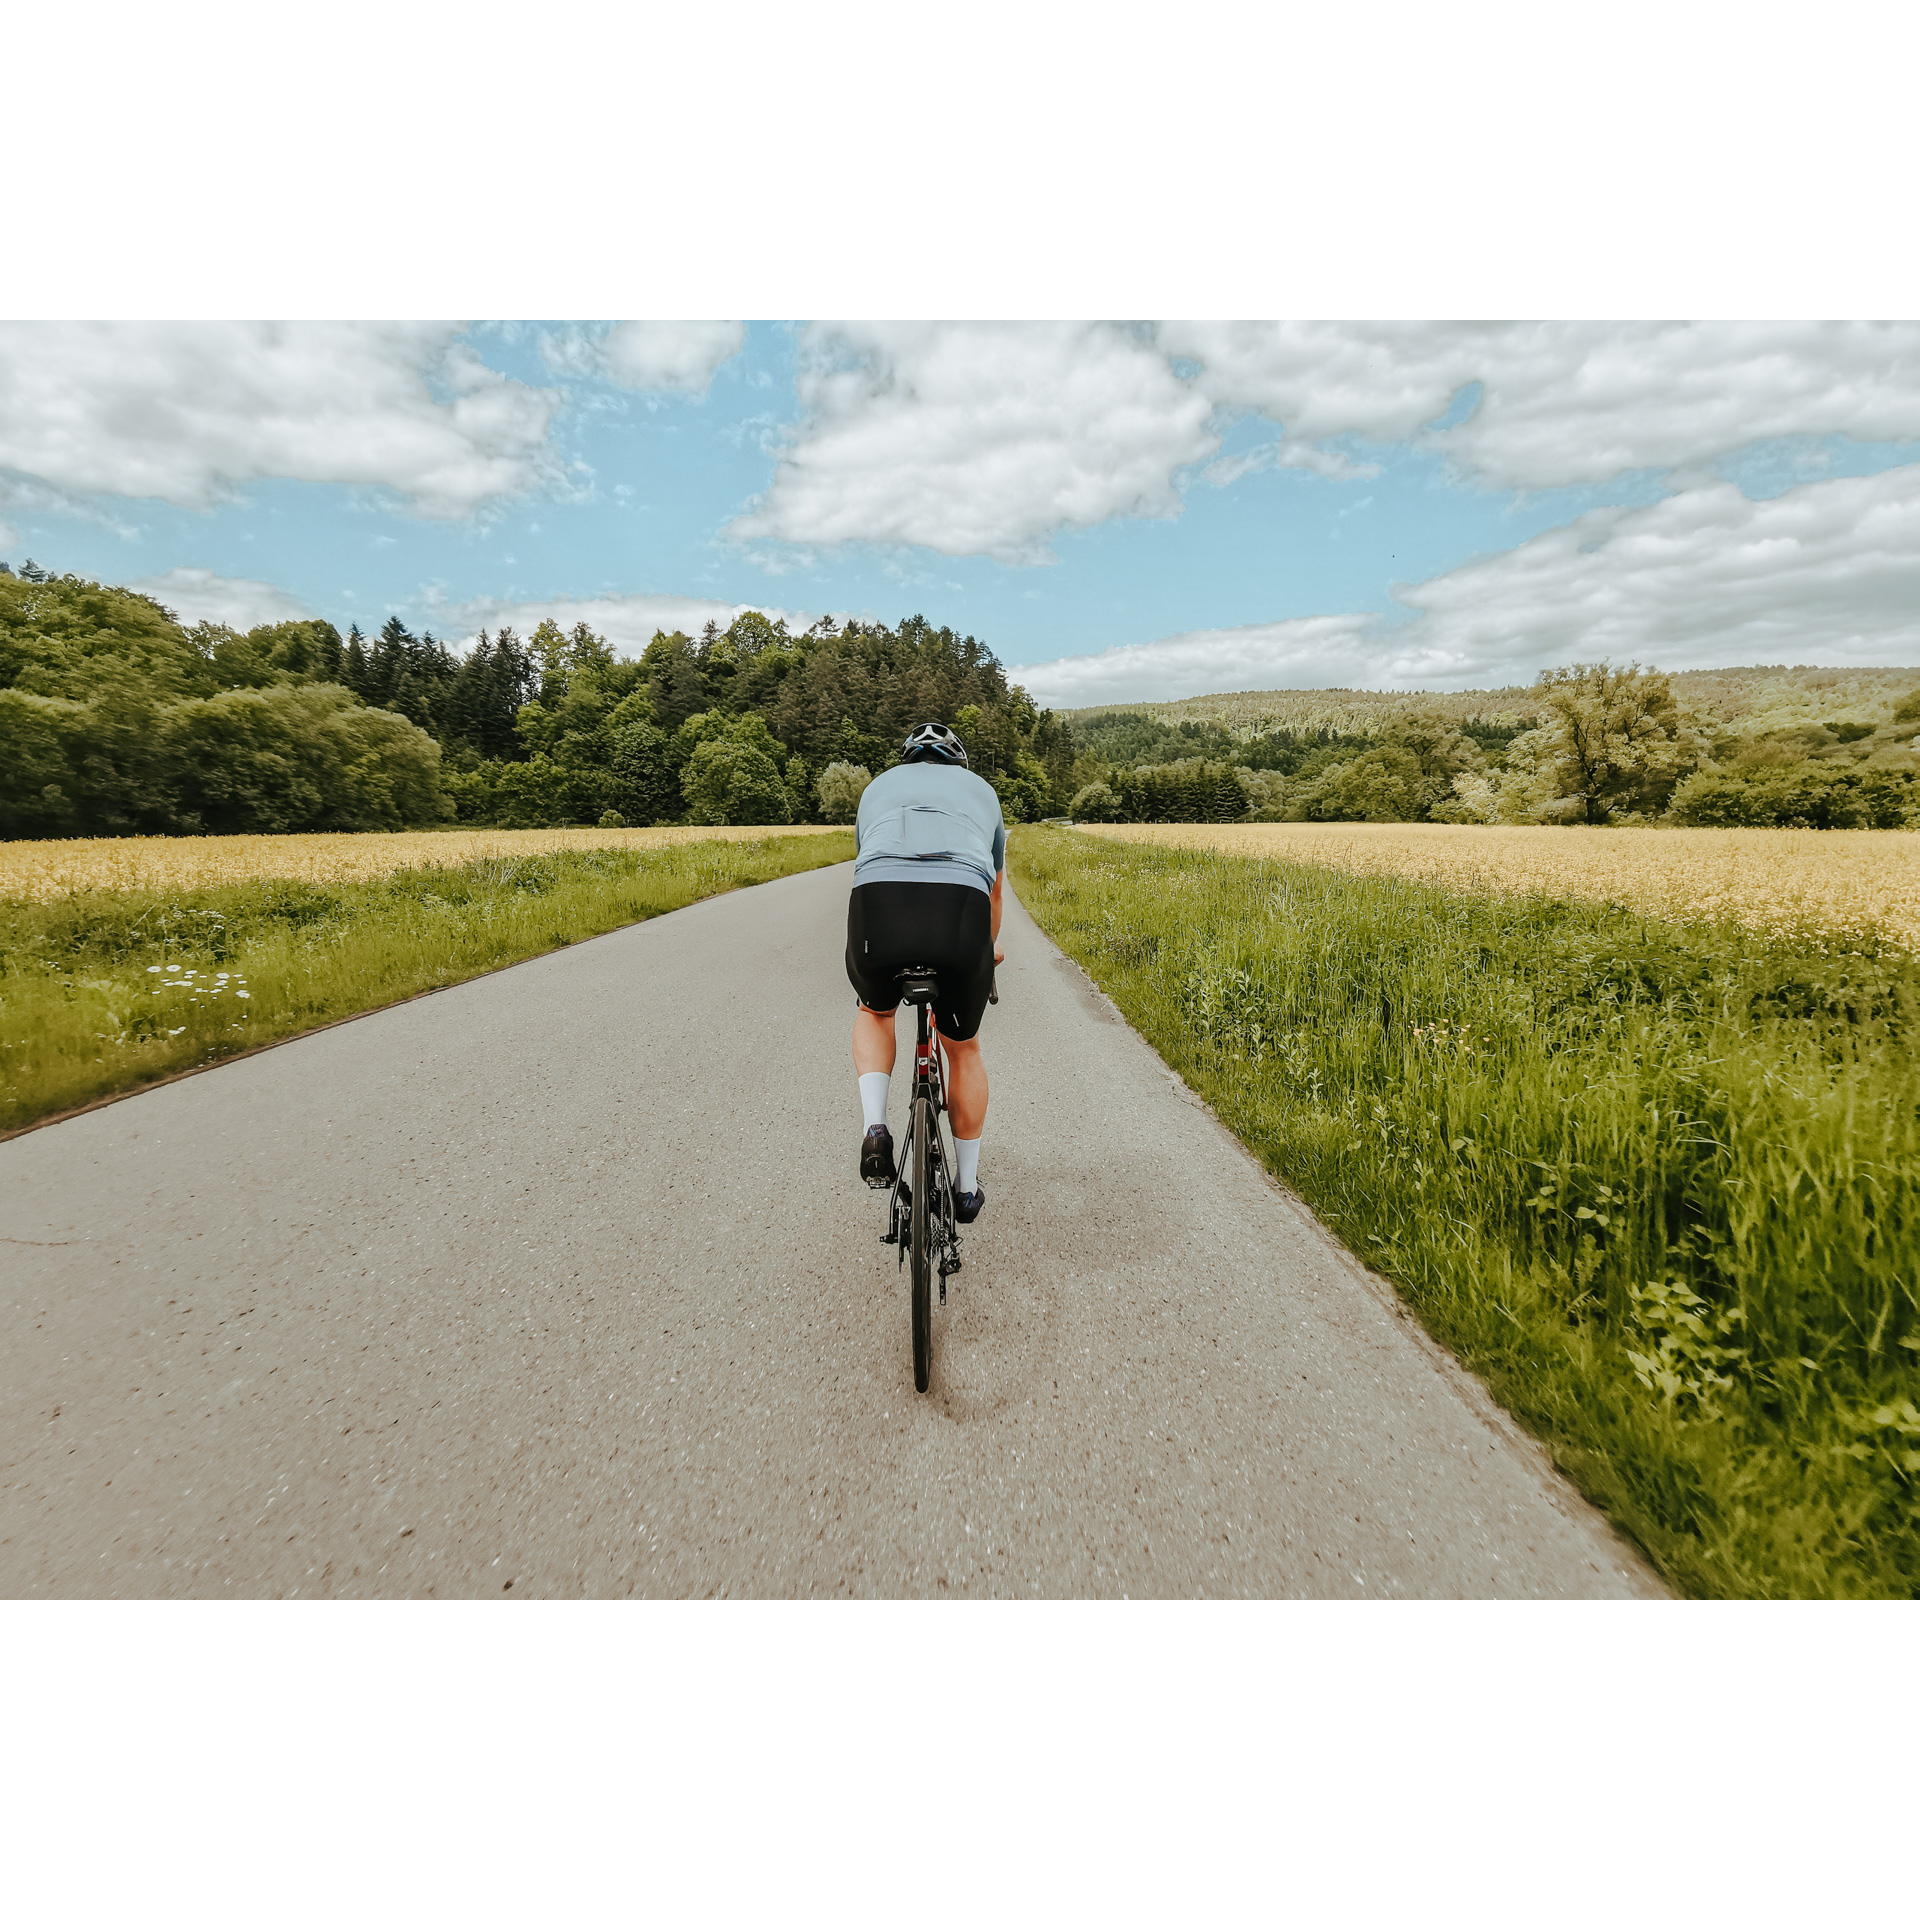 Rowerzysta w niebiesko-czarnym stroju jadący drogą asfaltową w otoczeniu łąk pełnych zielono-żółtej roślinności i gęstym lasem w oddali